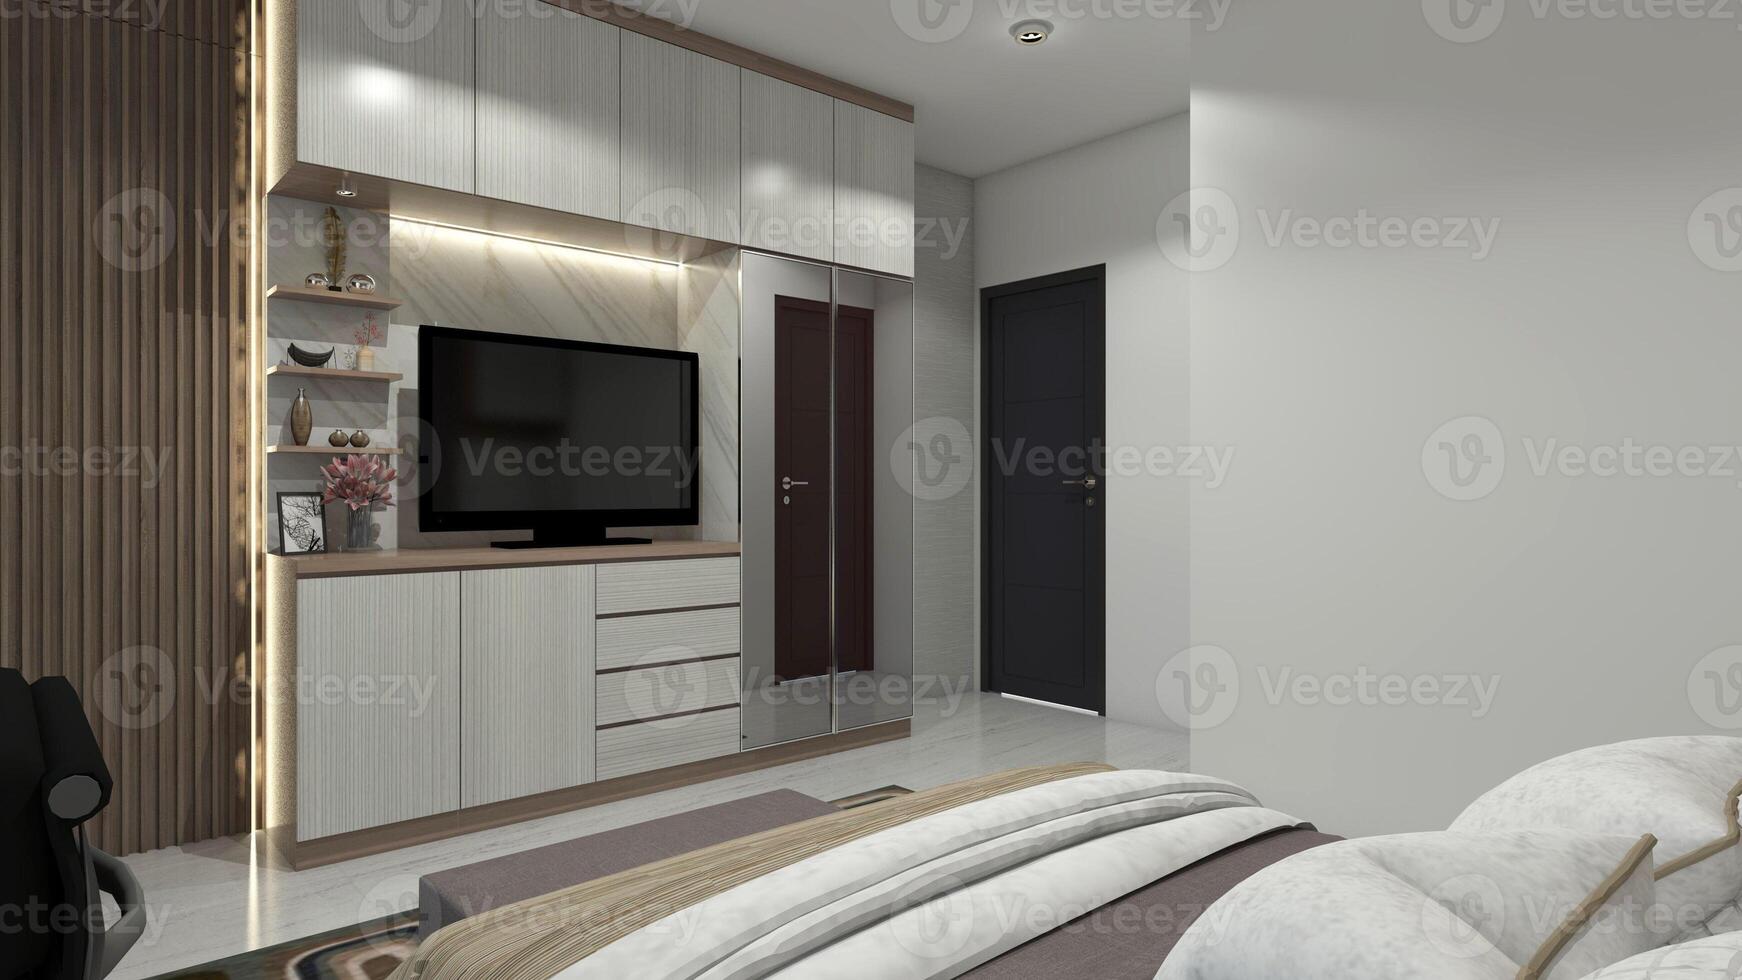 minimalistische houten TV kabinet ontwerp met garderobe kabinet en achtergrond decoratie, 3d illustratie foto